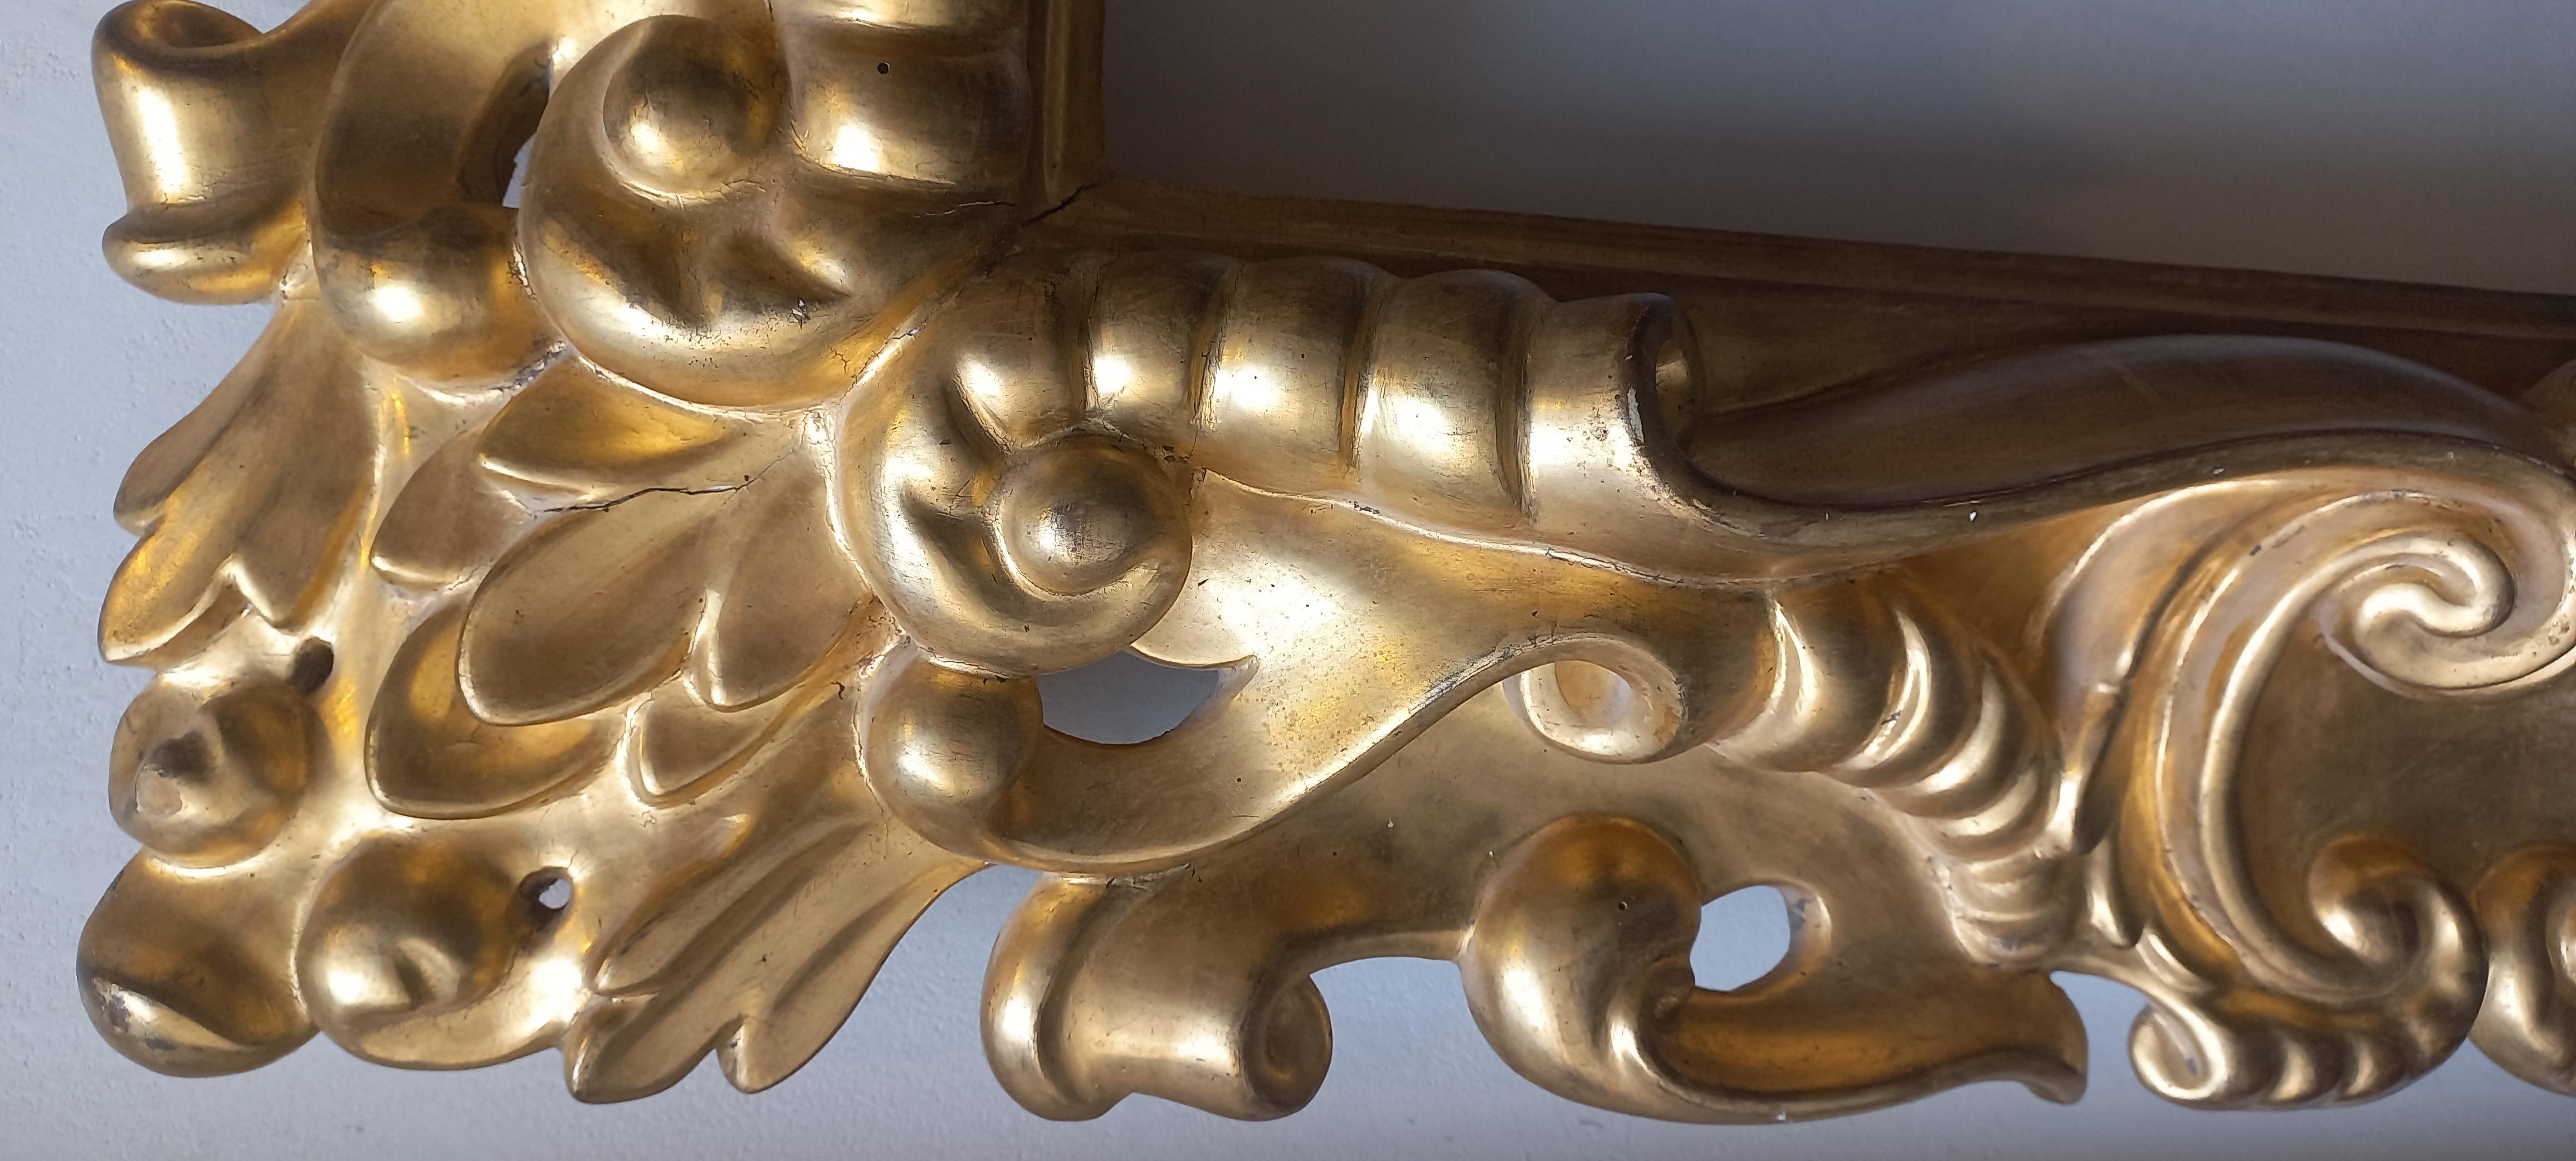 Cornice intagliata in legno dorato, eine foglia d'oro, in Holz (Barock)